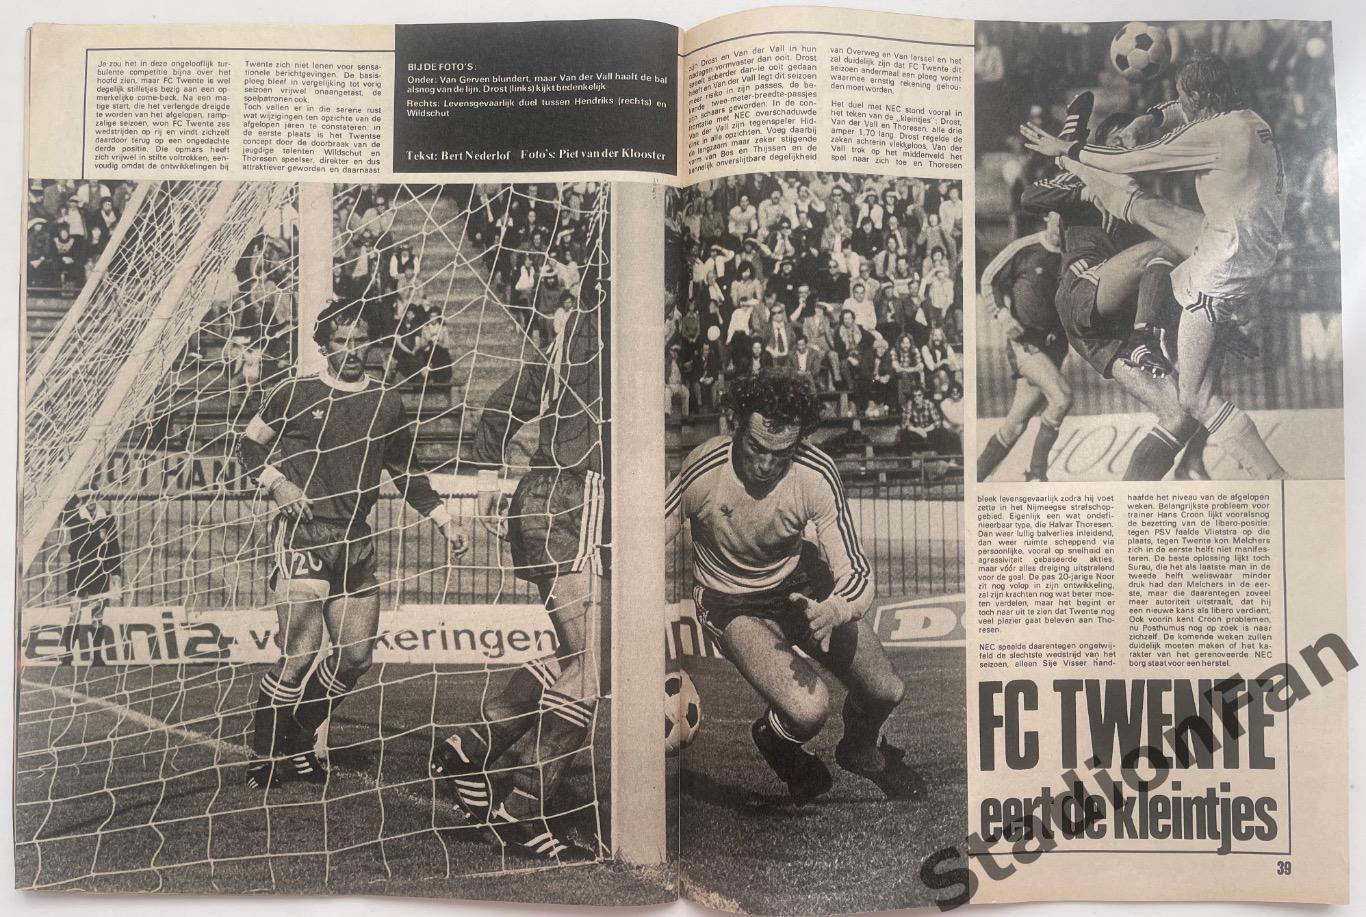 Журнал Voetbal nr.42 - 1977 год. 7